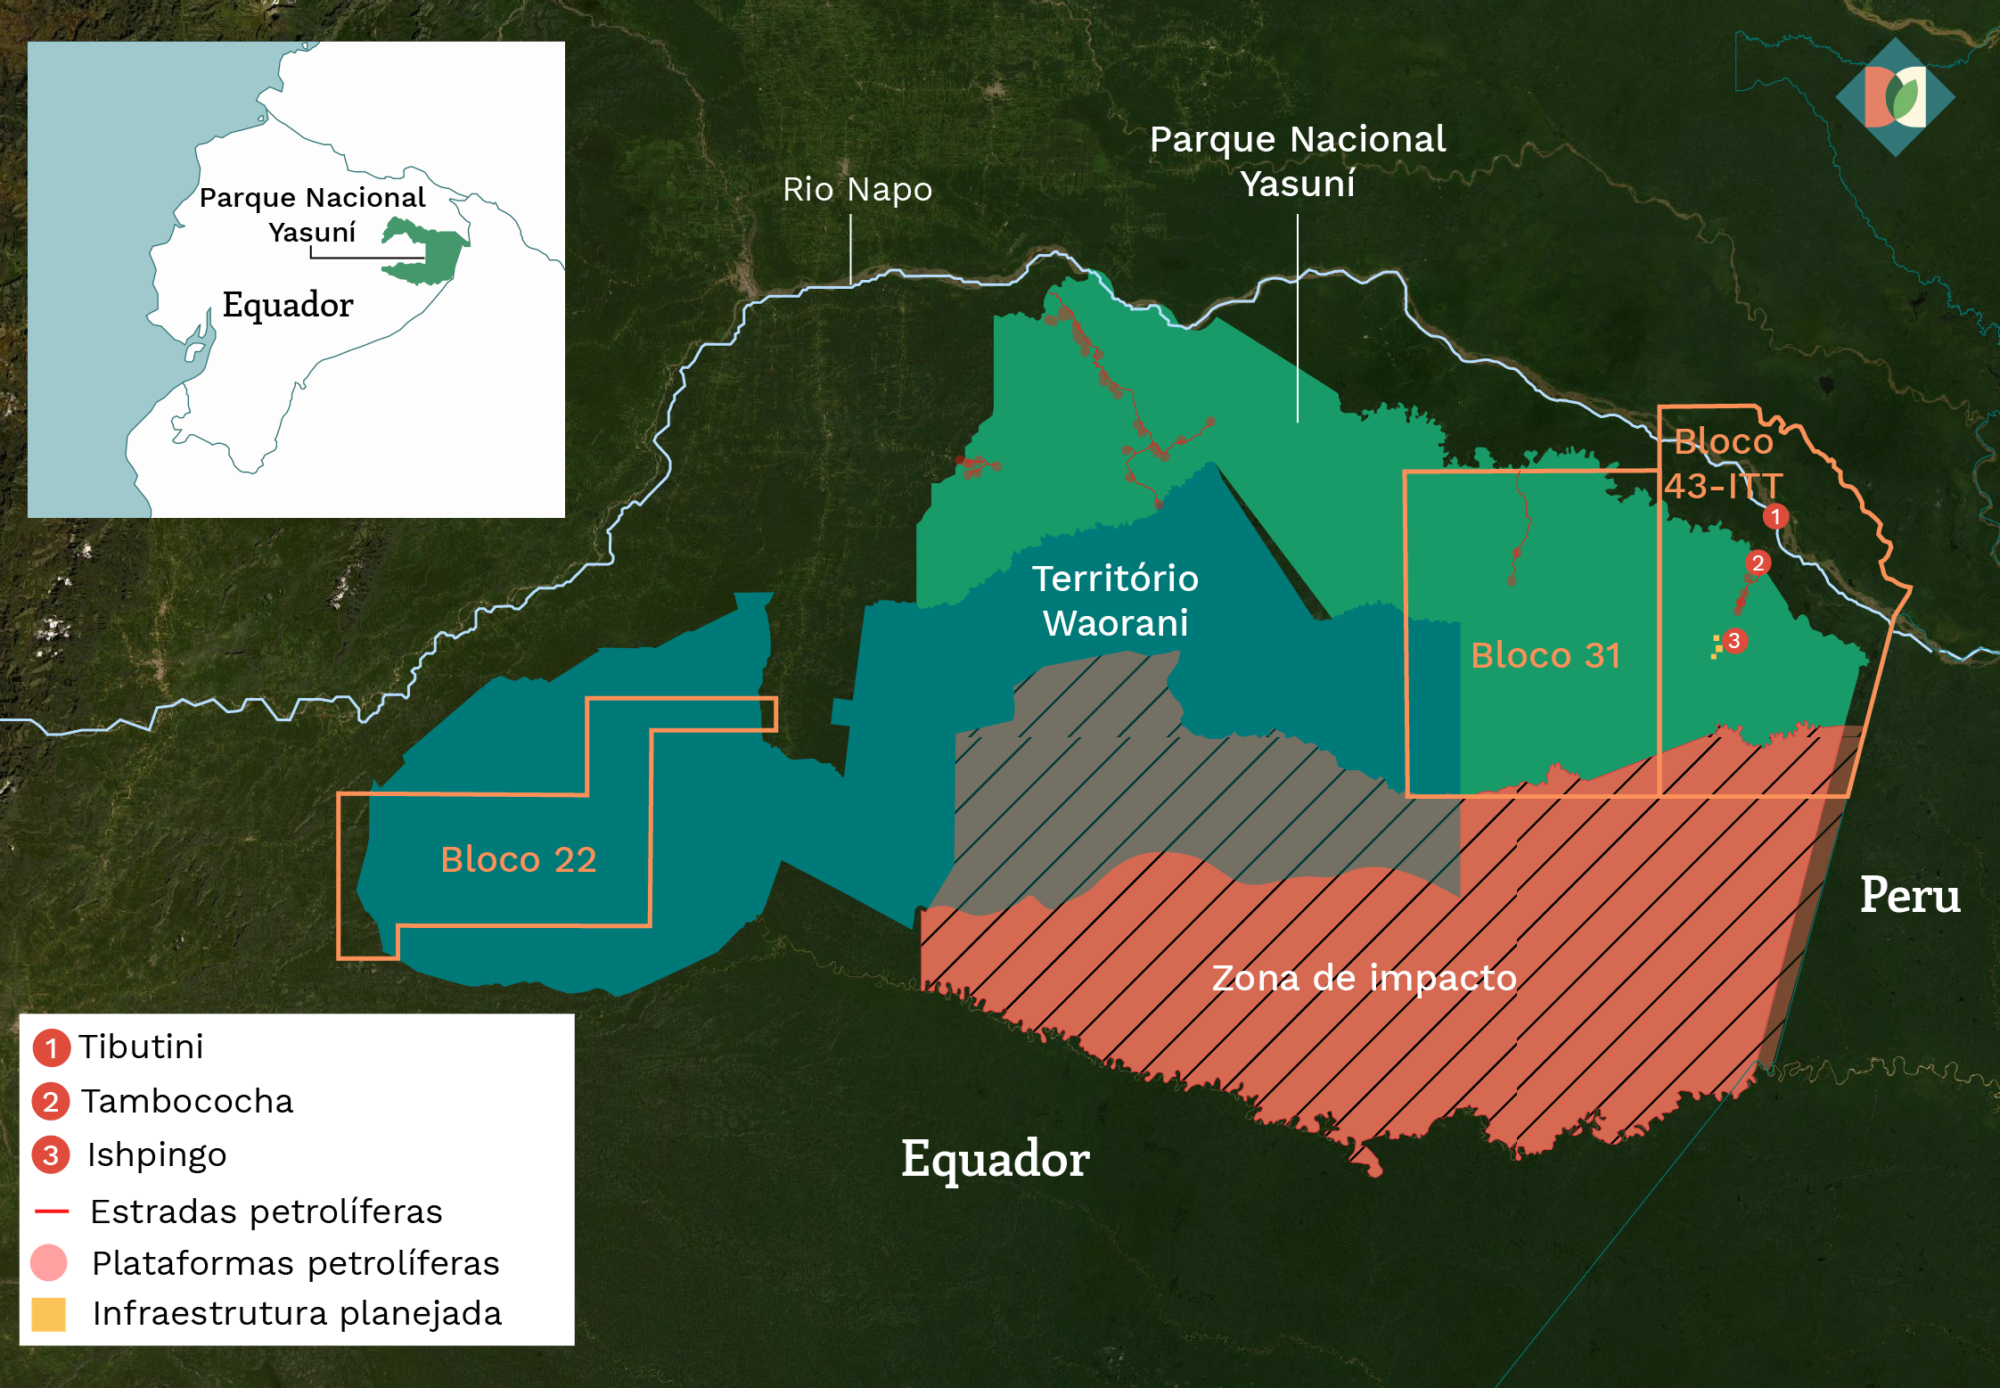 Mapa mostrando a localização do Parque Nacional Yasuní, dos blocos petrolíferos 22, 31 e 43-ITT, da zona de amortecimento e do território Waorani.